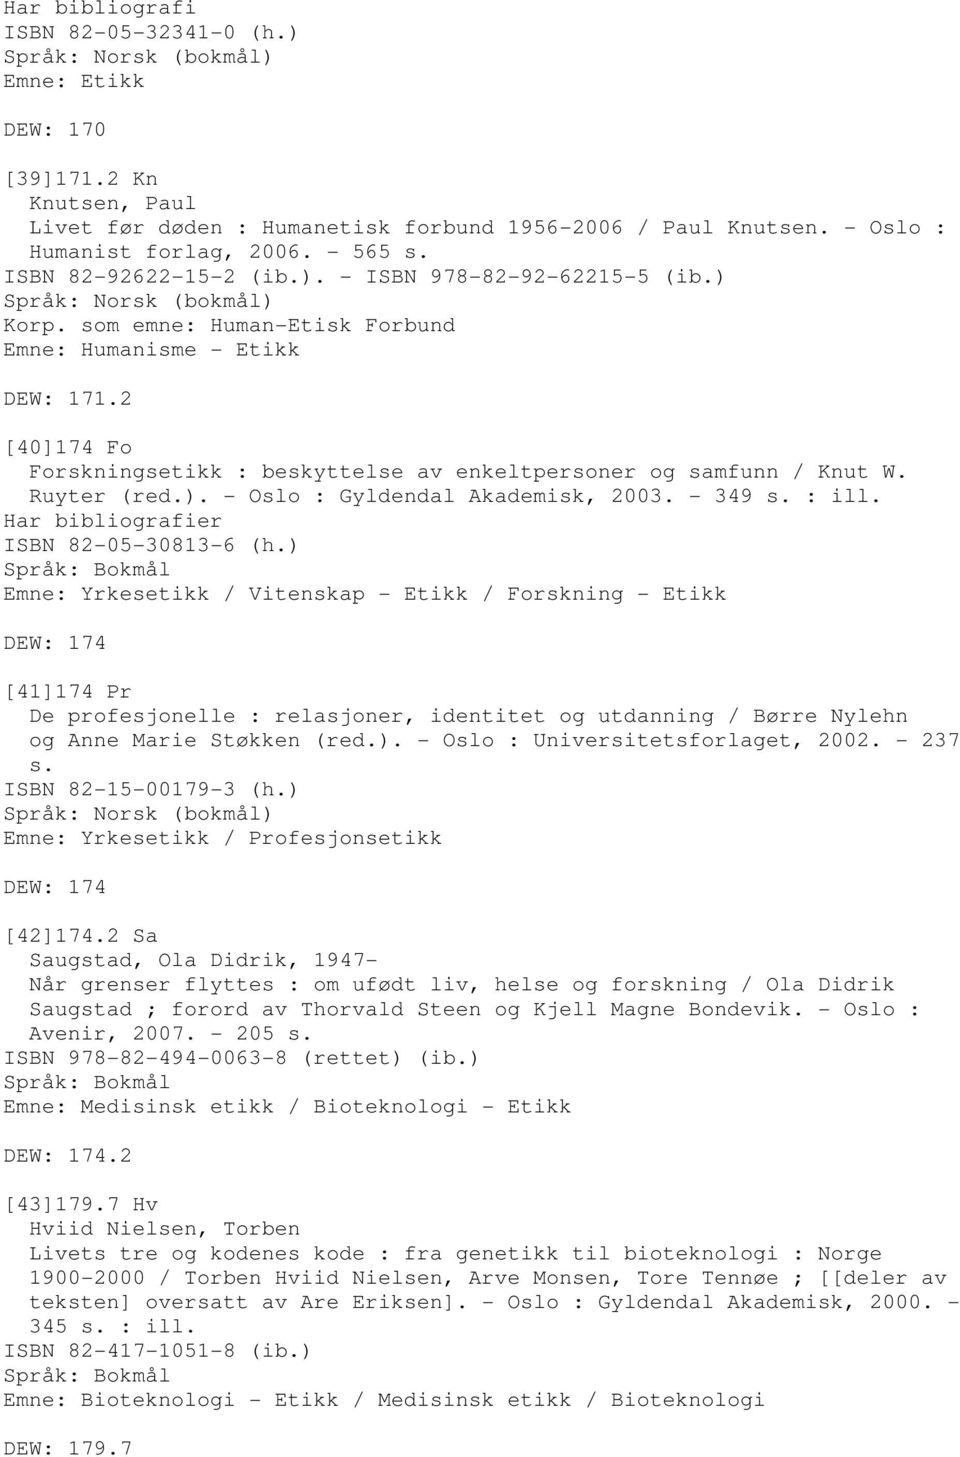 2 [40]174 Fo Forskningsetikk : beskyttelse av enkeltpersoner og samfunn / Knut W. Ruyter (red.). - Oslo : Gyldendal Akademisk, 2003. - 349 s. : ill. Har bibliografier ISBN 82-05-30813-6 (h.